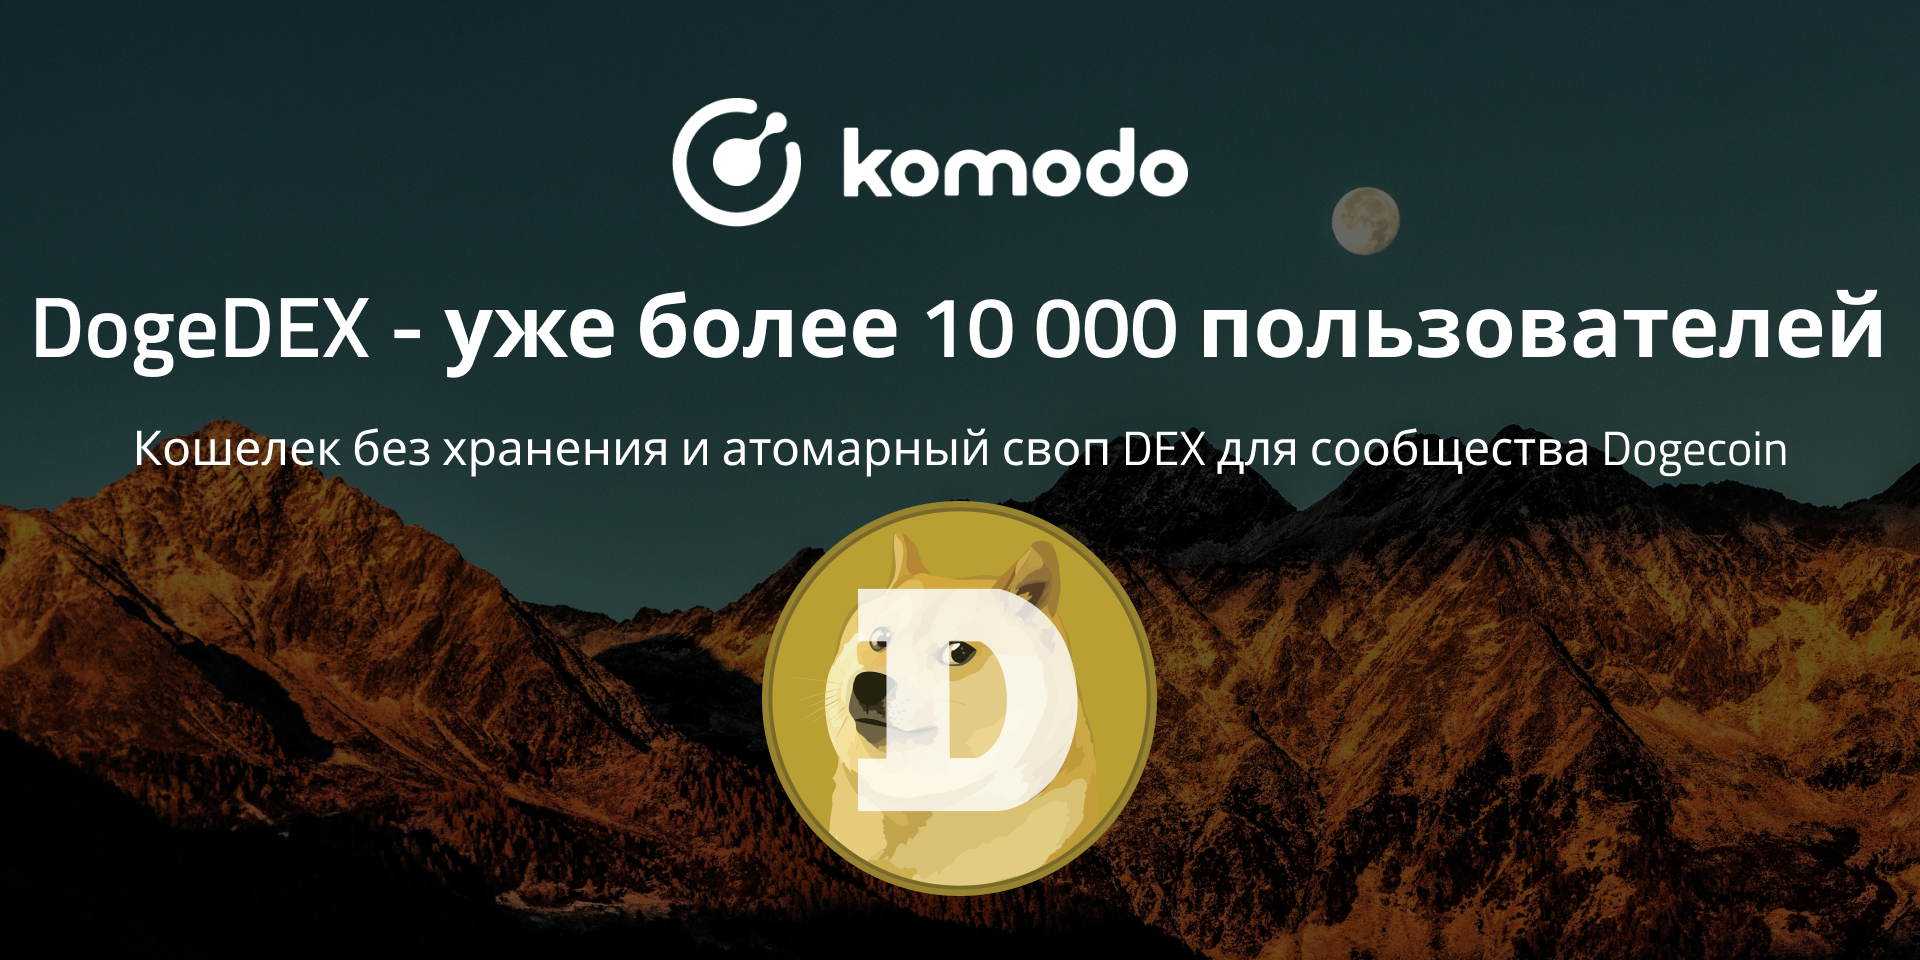 DogeDEX - уже более 10 000 пользователей